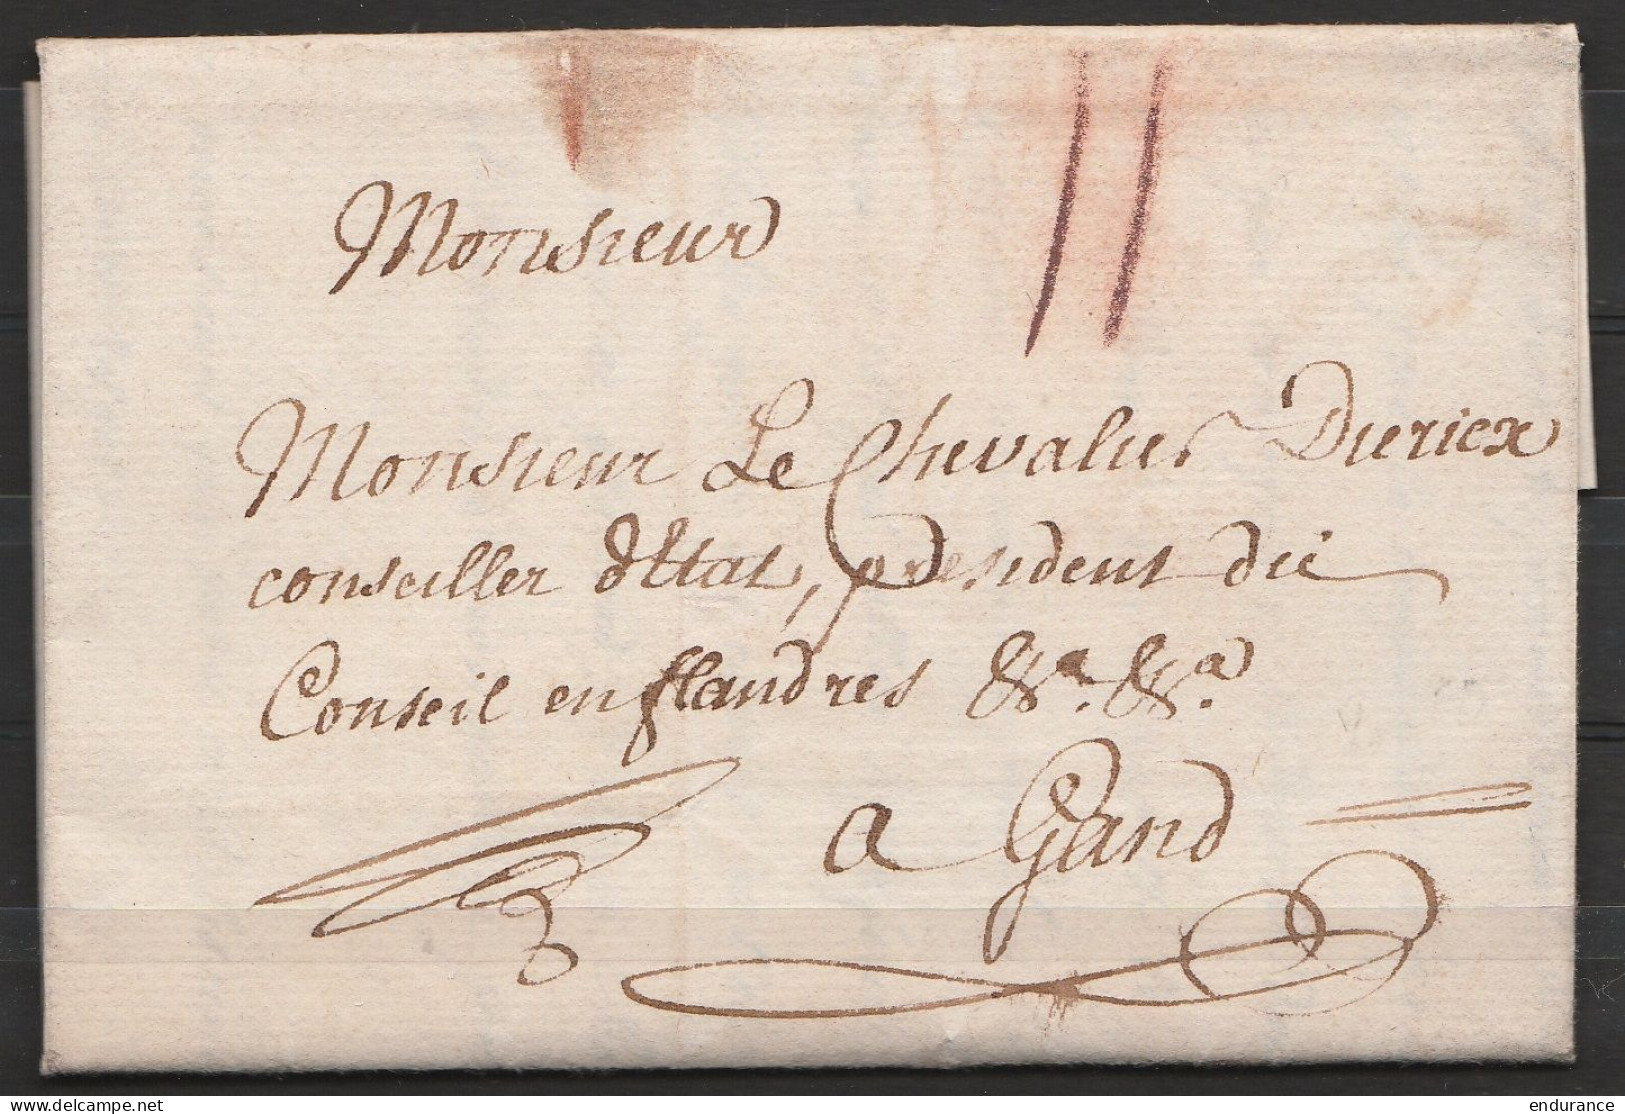 L. Datée 20 Juin 1783 De BRUXELLES Pour Chevalier Diericx, Conseiller D'Etat à GAND - Port "II" à La Craie Rouge - 1714-1794 (Oostenrijkse Nederlanden)